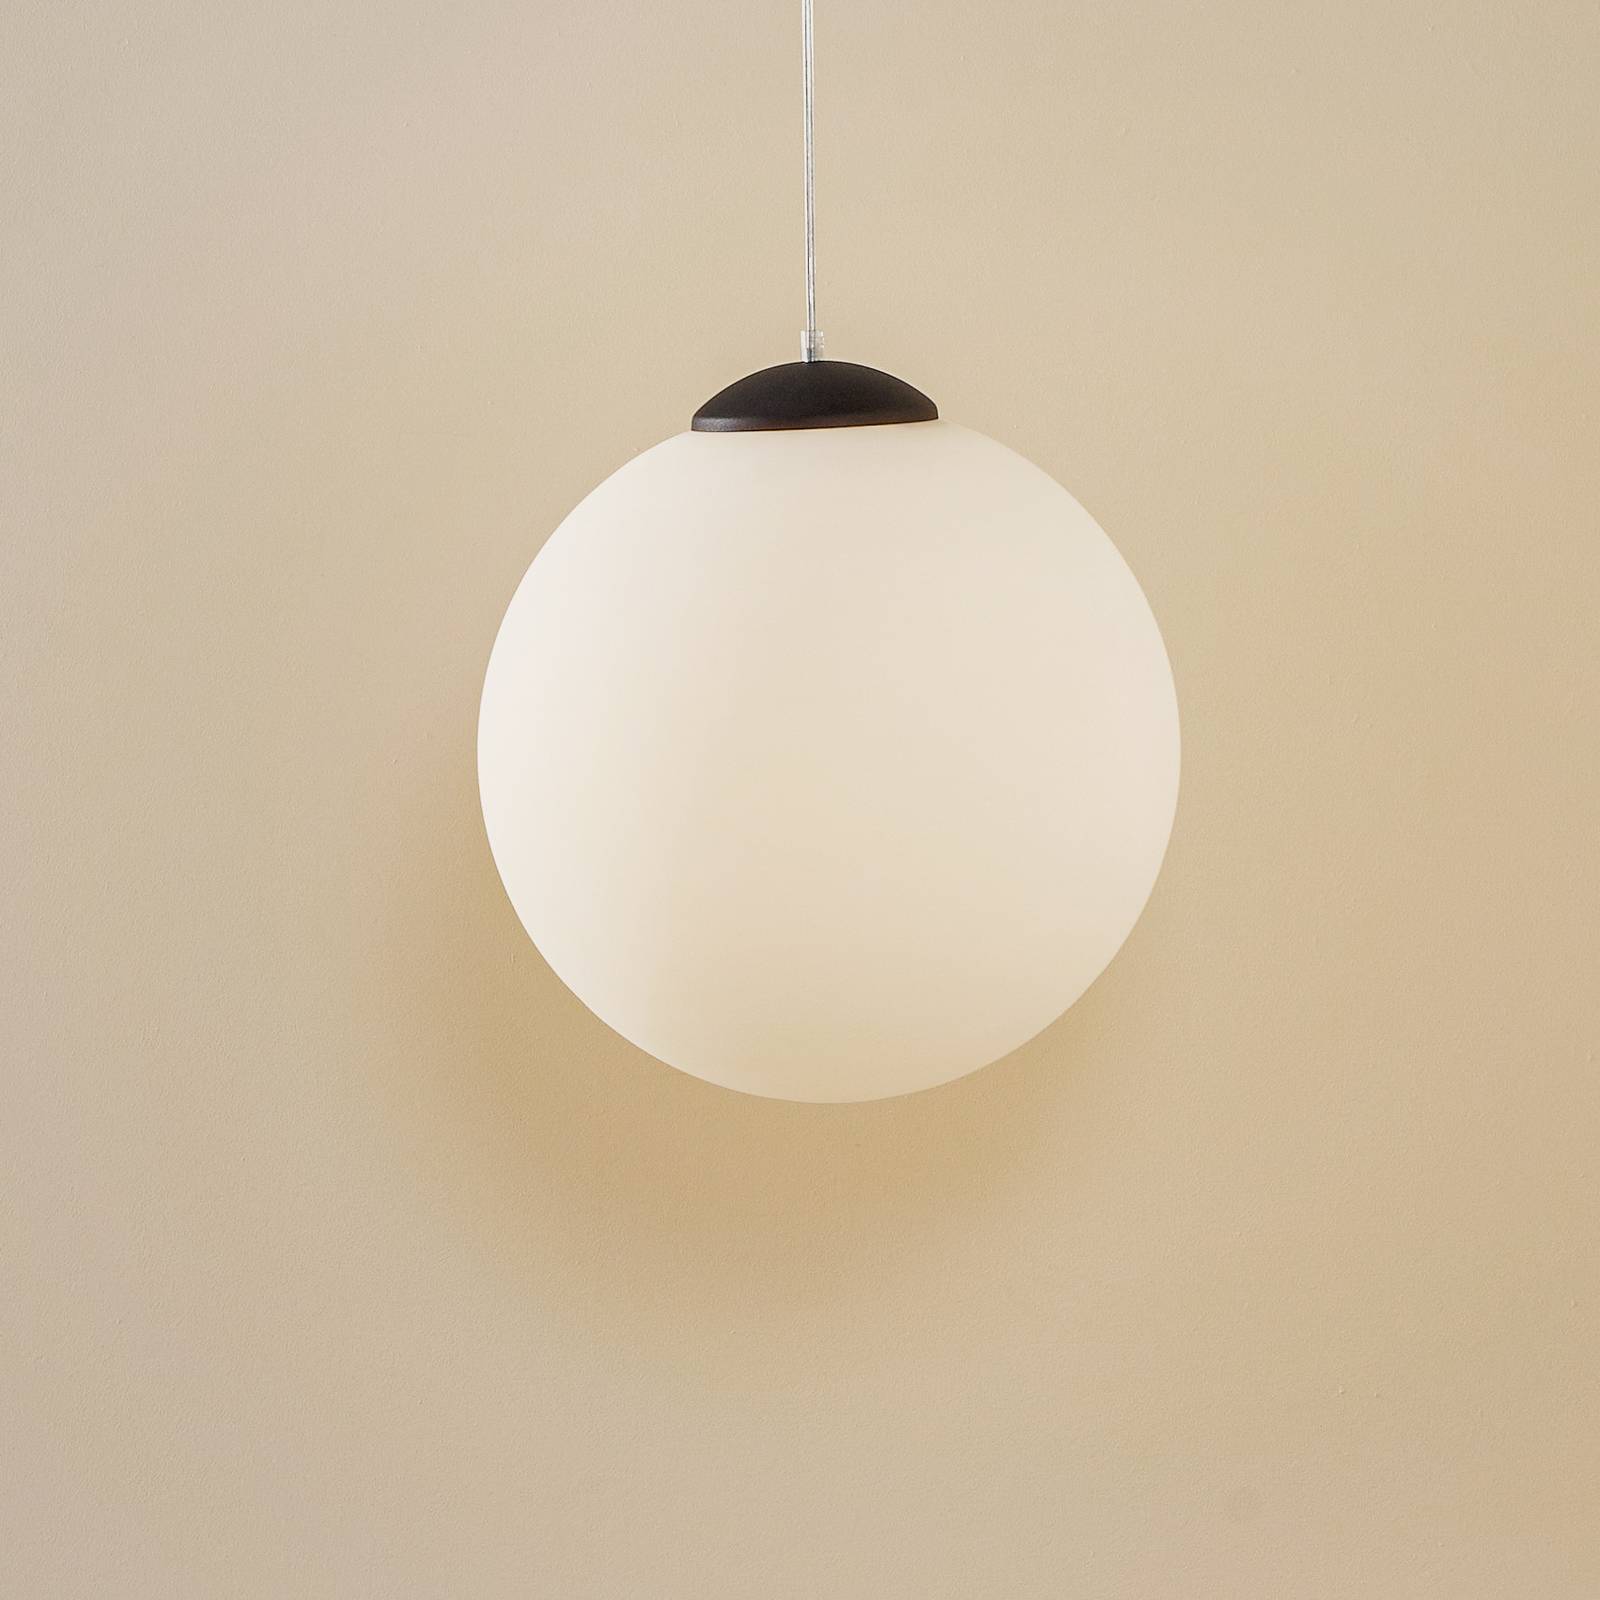 Ball függő lámpa, opálüveg/króm, Ø 40 cm